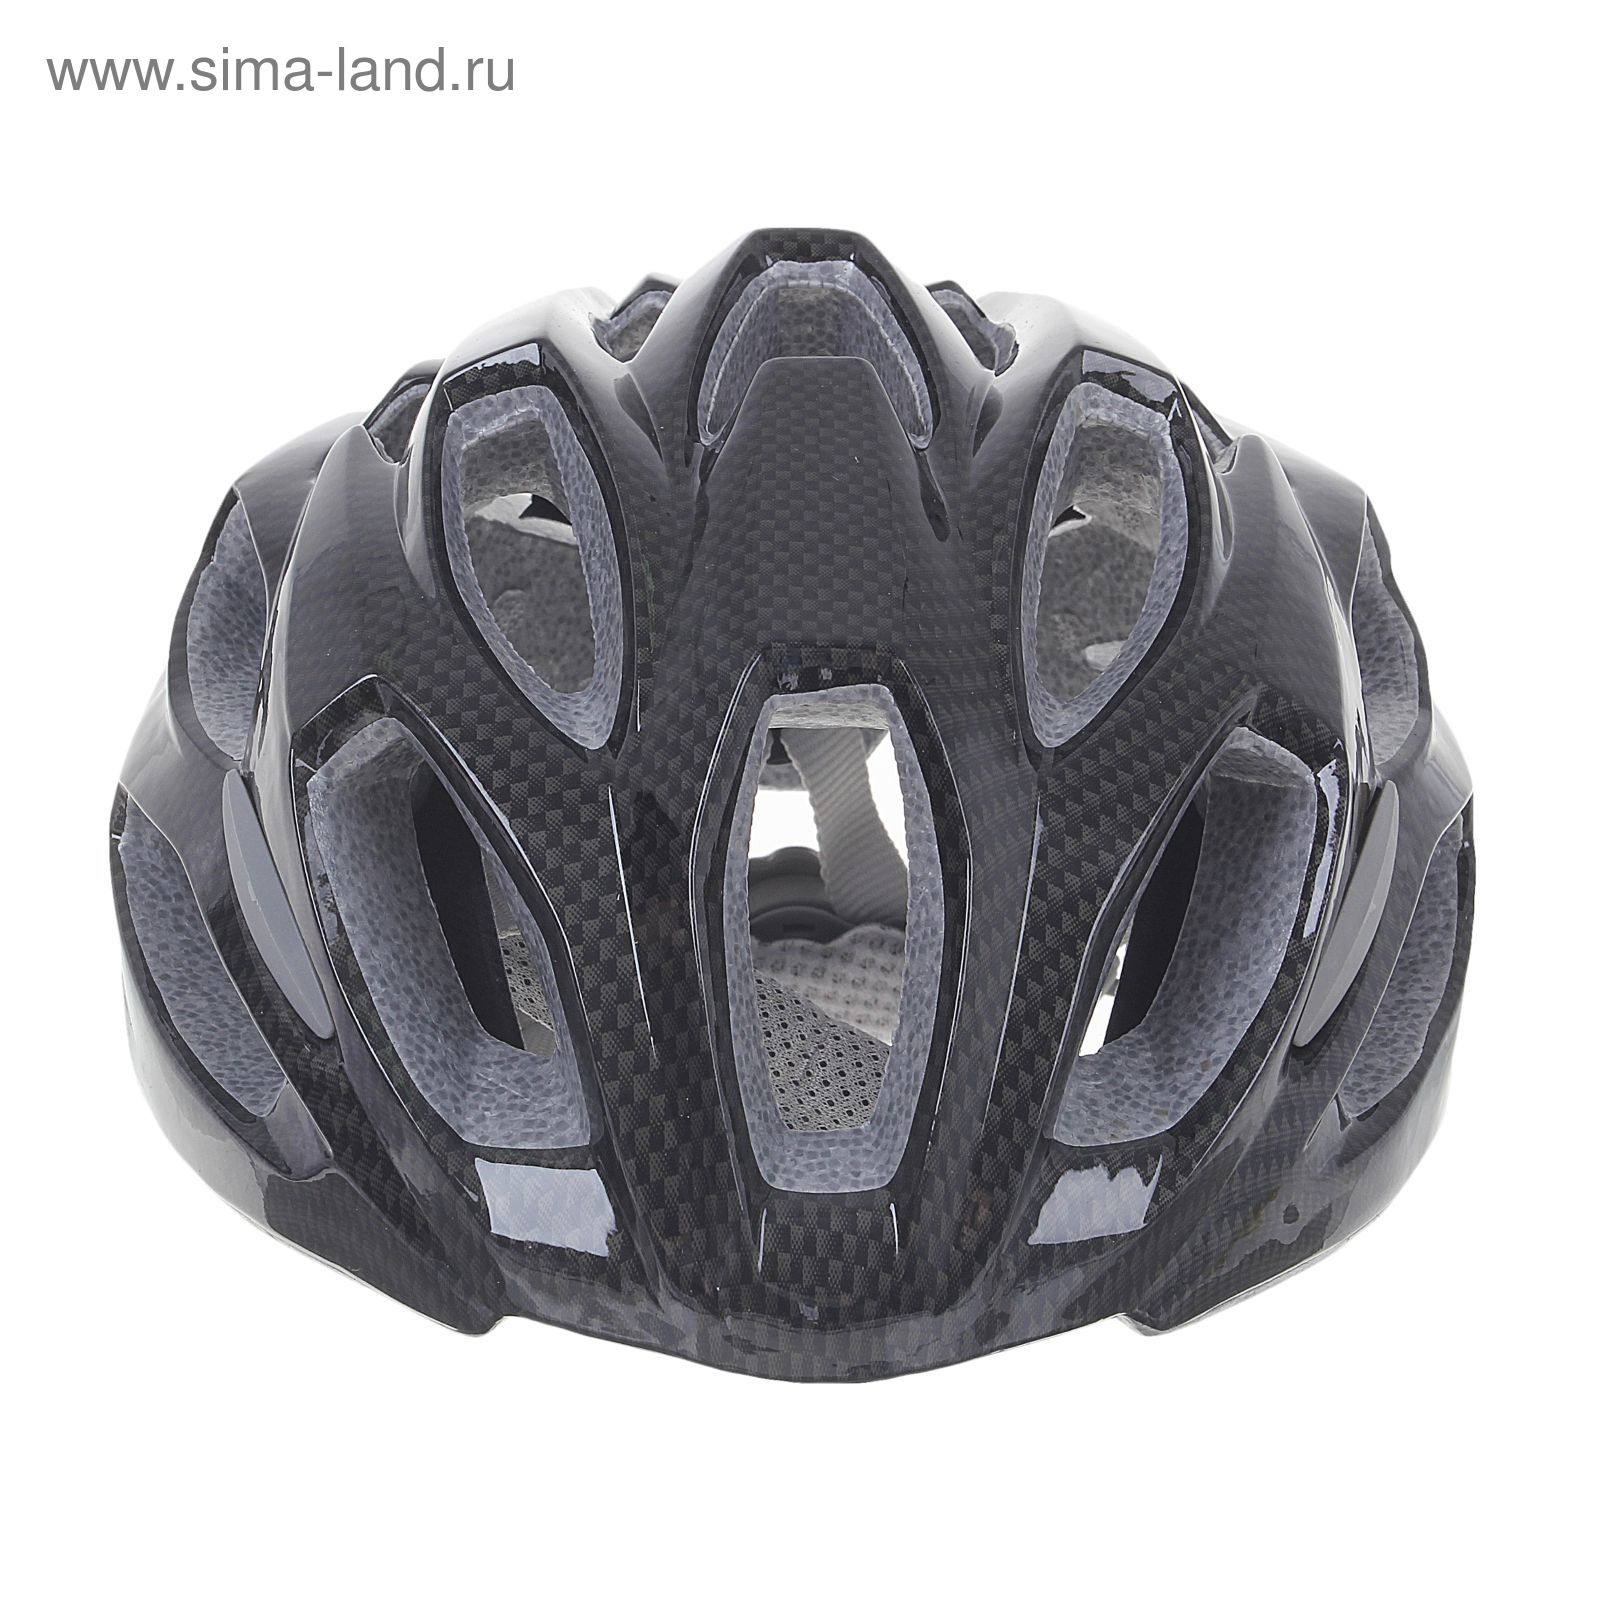 Шлем велосипедиста взрослый ОТ-T28, черный, диаметр 54 см